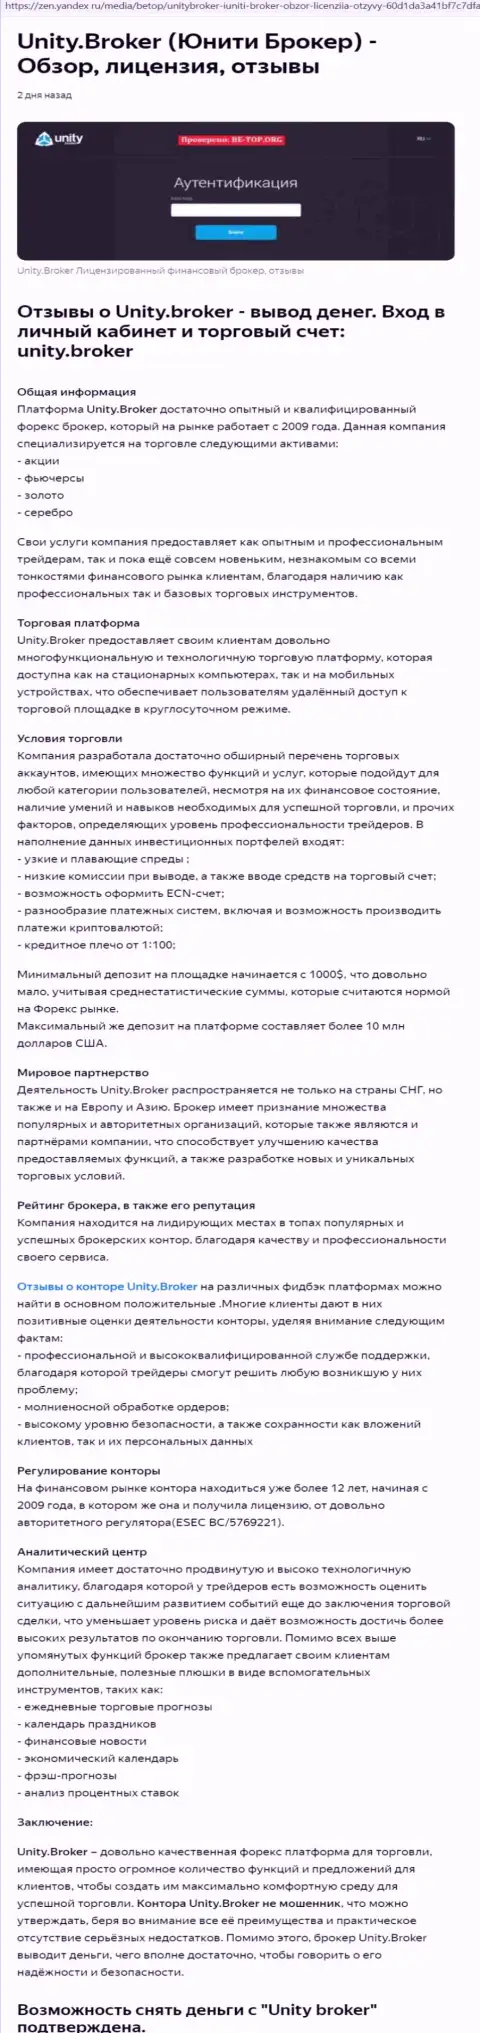 Разбор деятельности ФОРЕКС брокера Unity Broker на web-сайте Yandex Zen